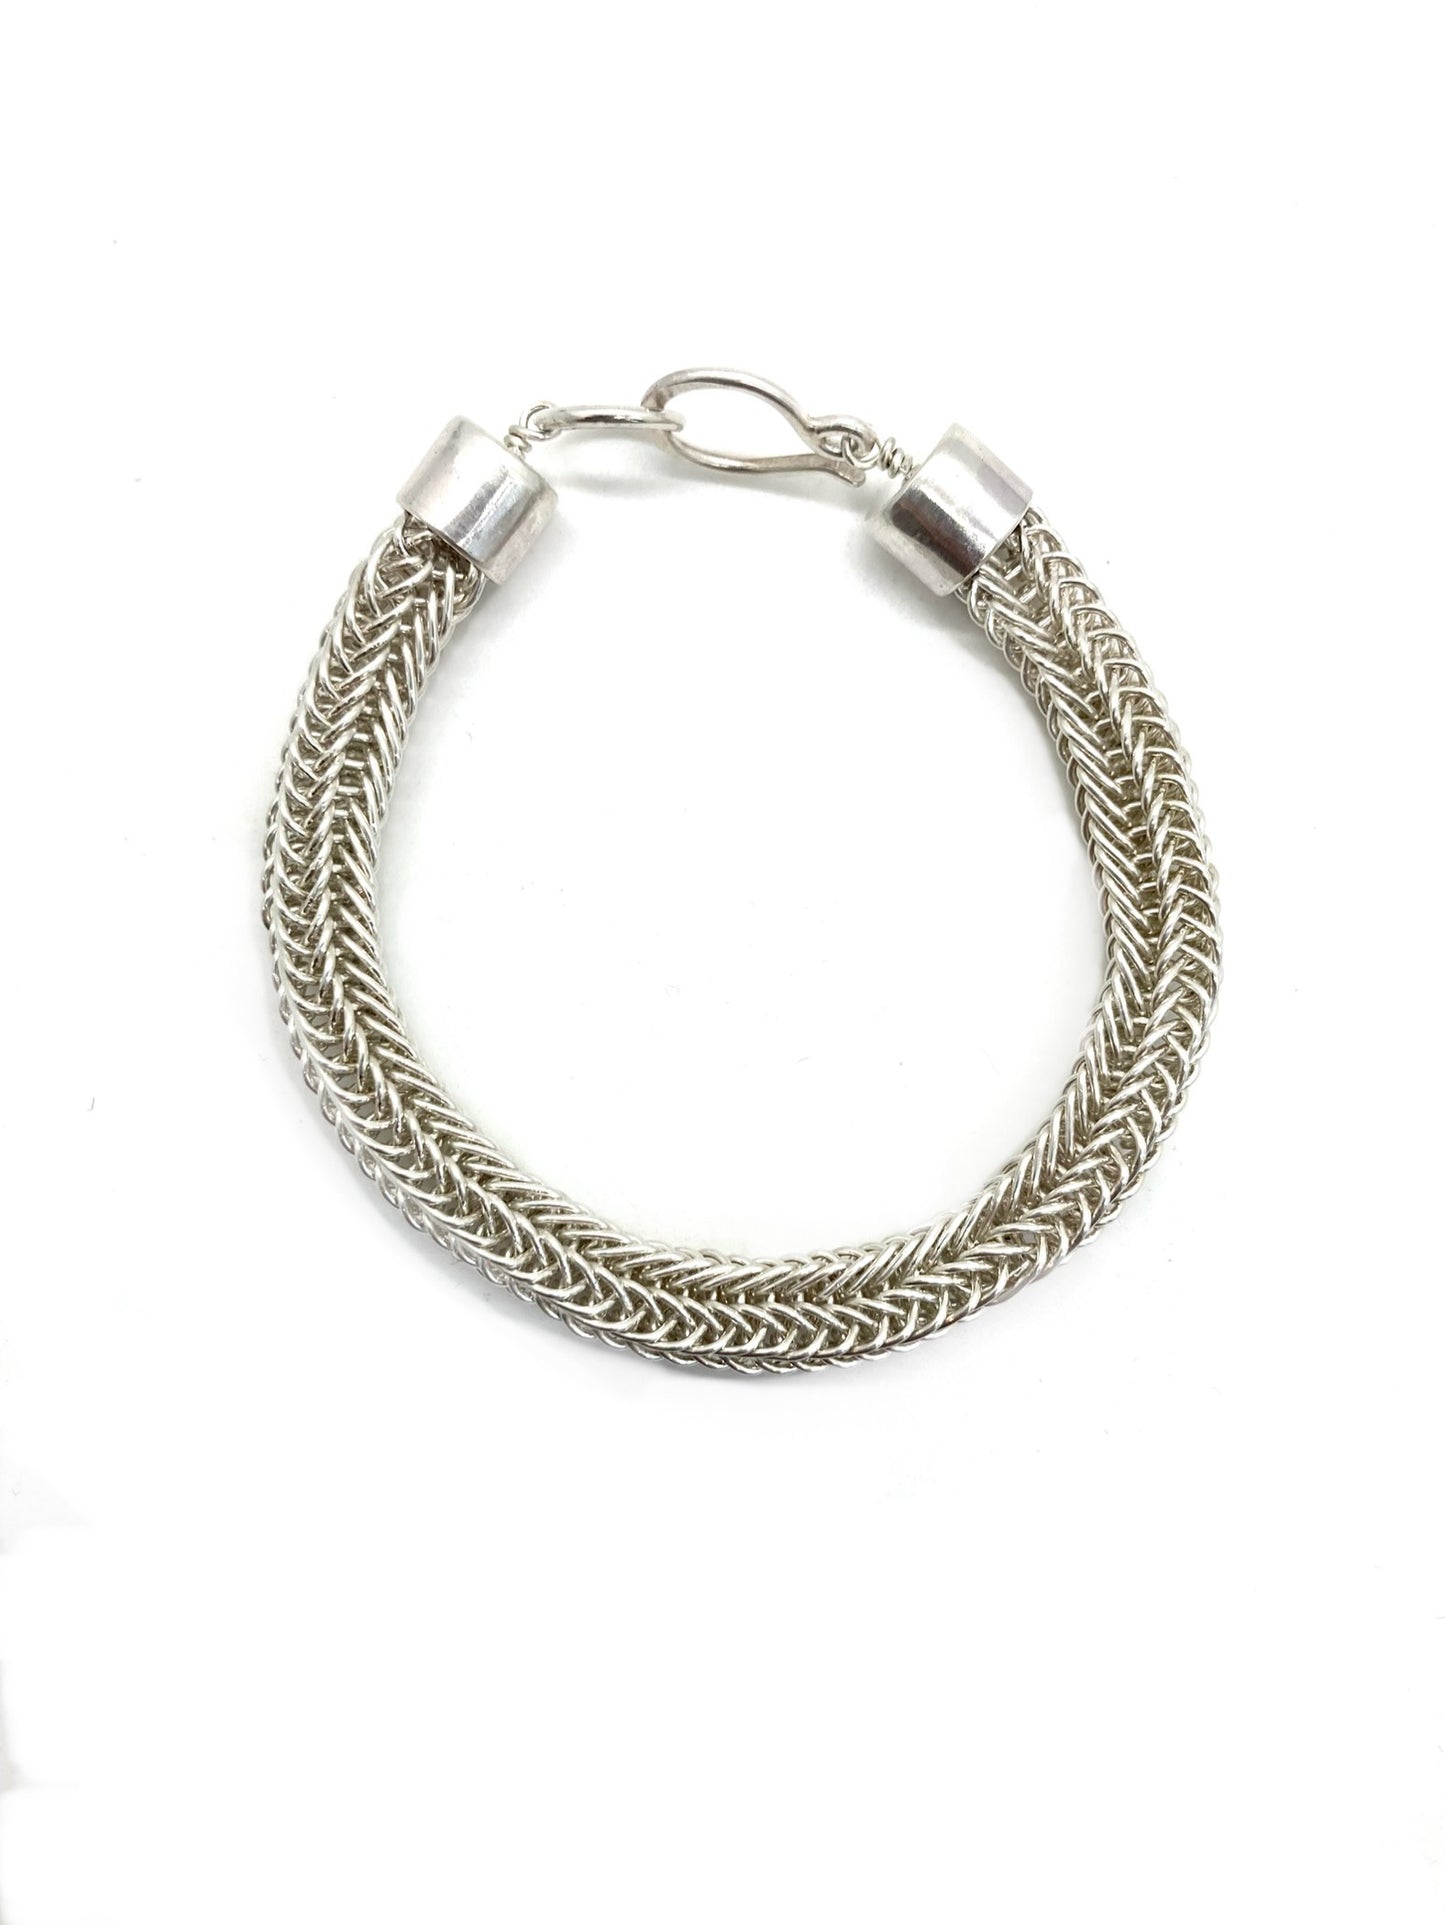 Viking Knit Bracelet in Sterling Silver